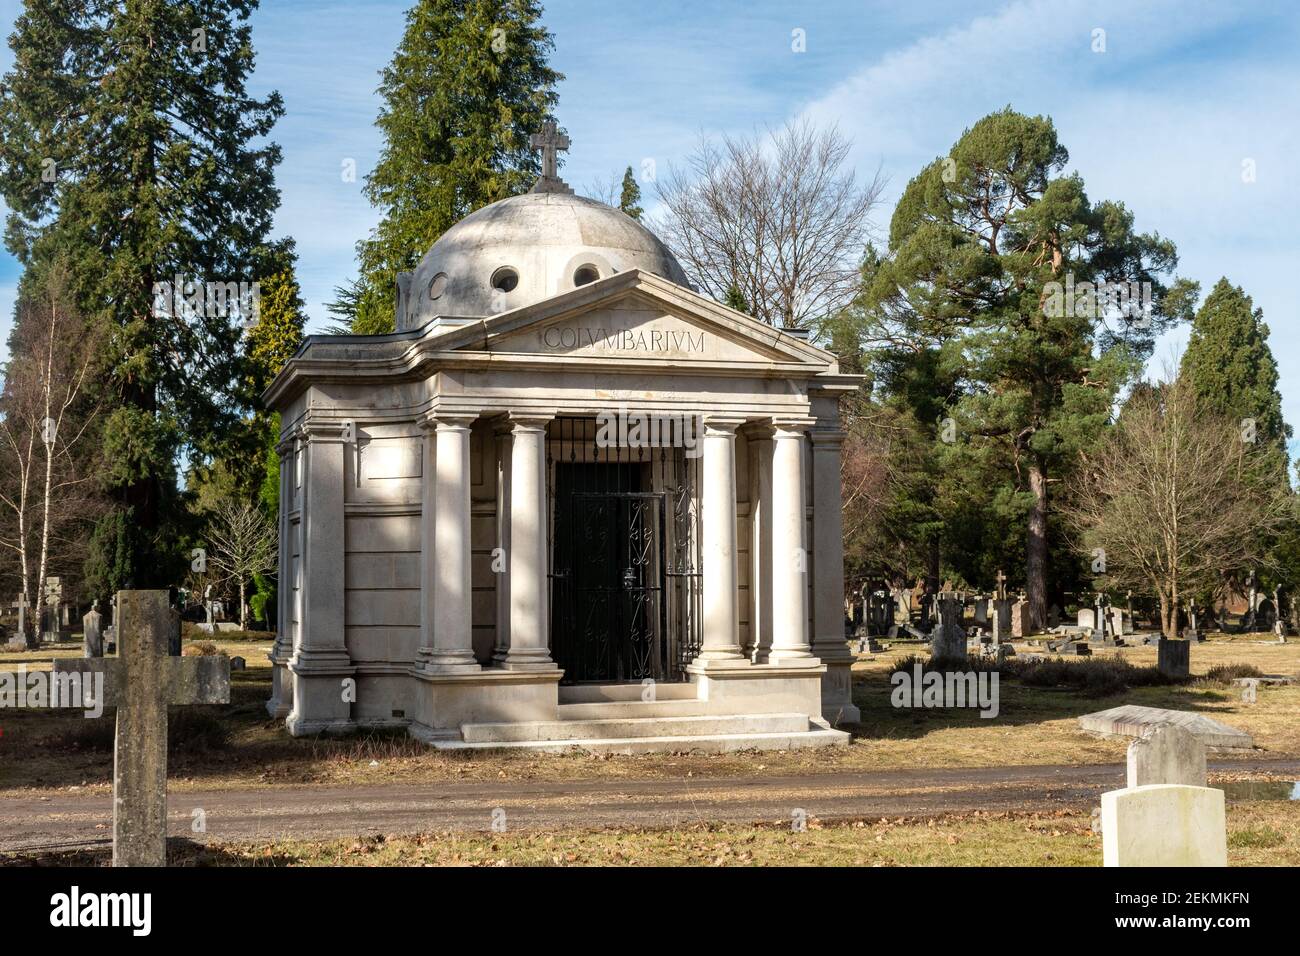 Le Columbarium, un bâtiment commémoratif construit en pierre blanche pour l'entreposage des urnes crématines, cimetière Brookwood, Surrey, Angleterre, Royaume-Uni Banque D'Images